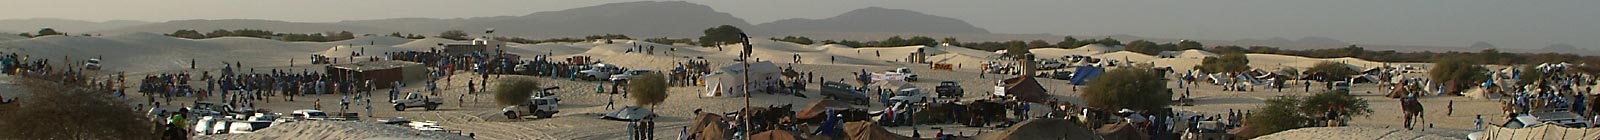 Festival in the desert